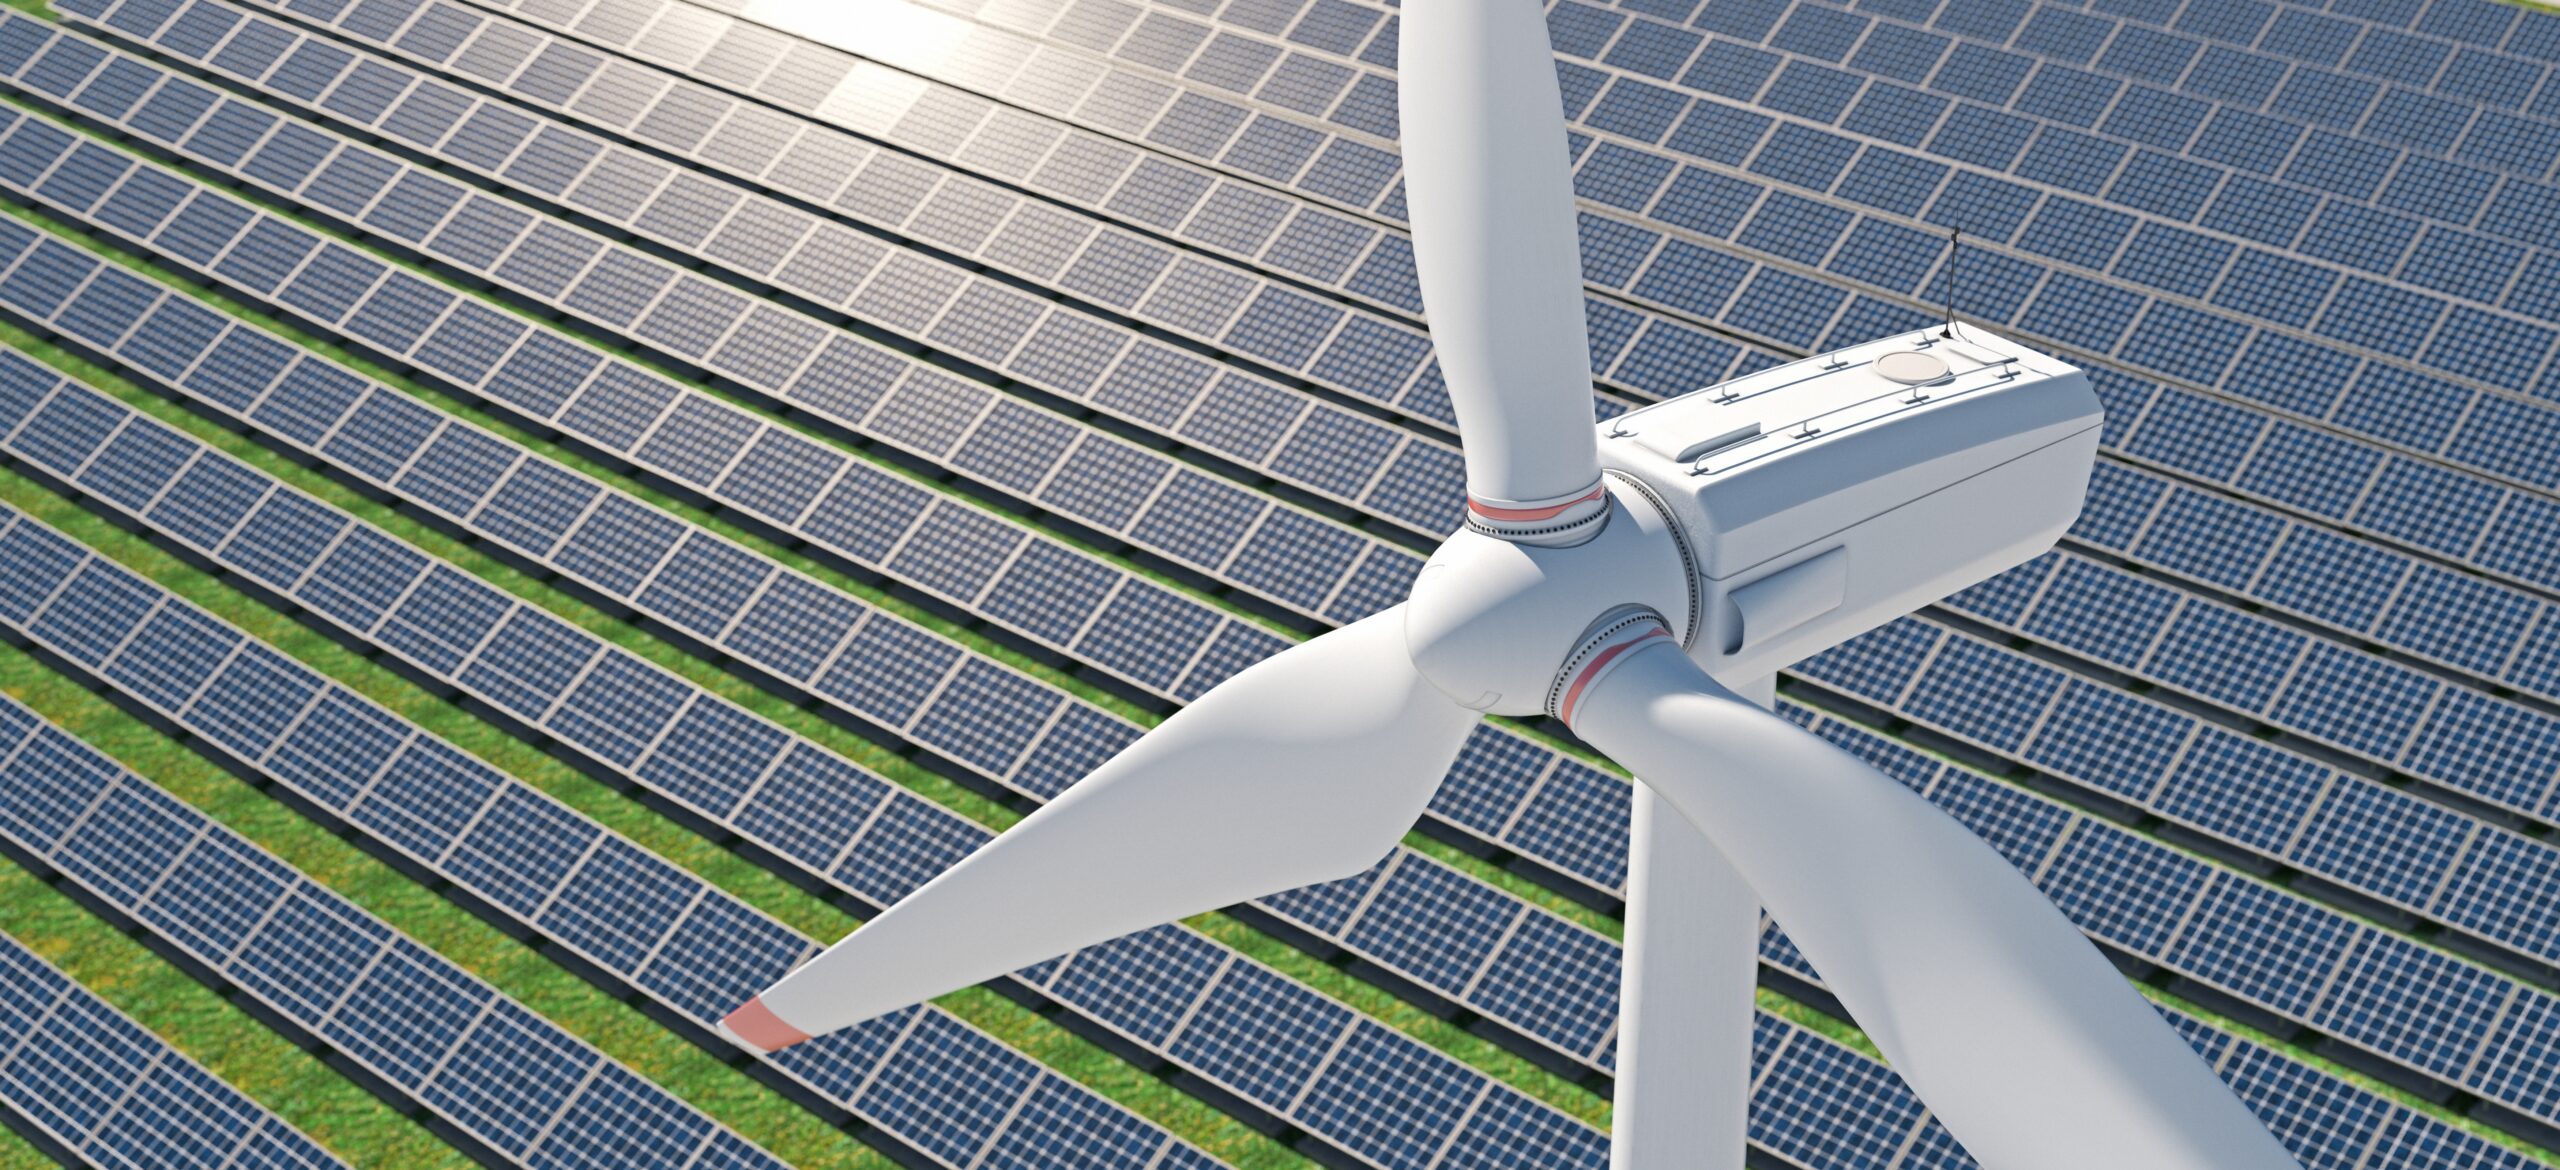 Comunicazione dei risparmi energetici ad ENEA: obbligatoria entro marzo 2022